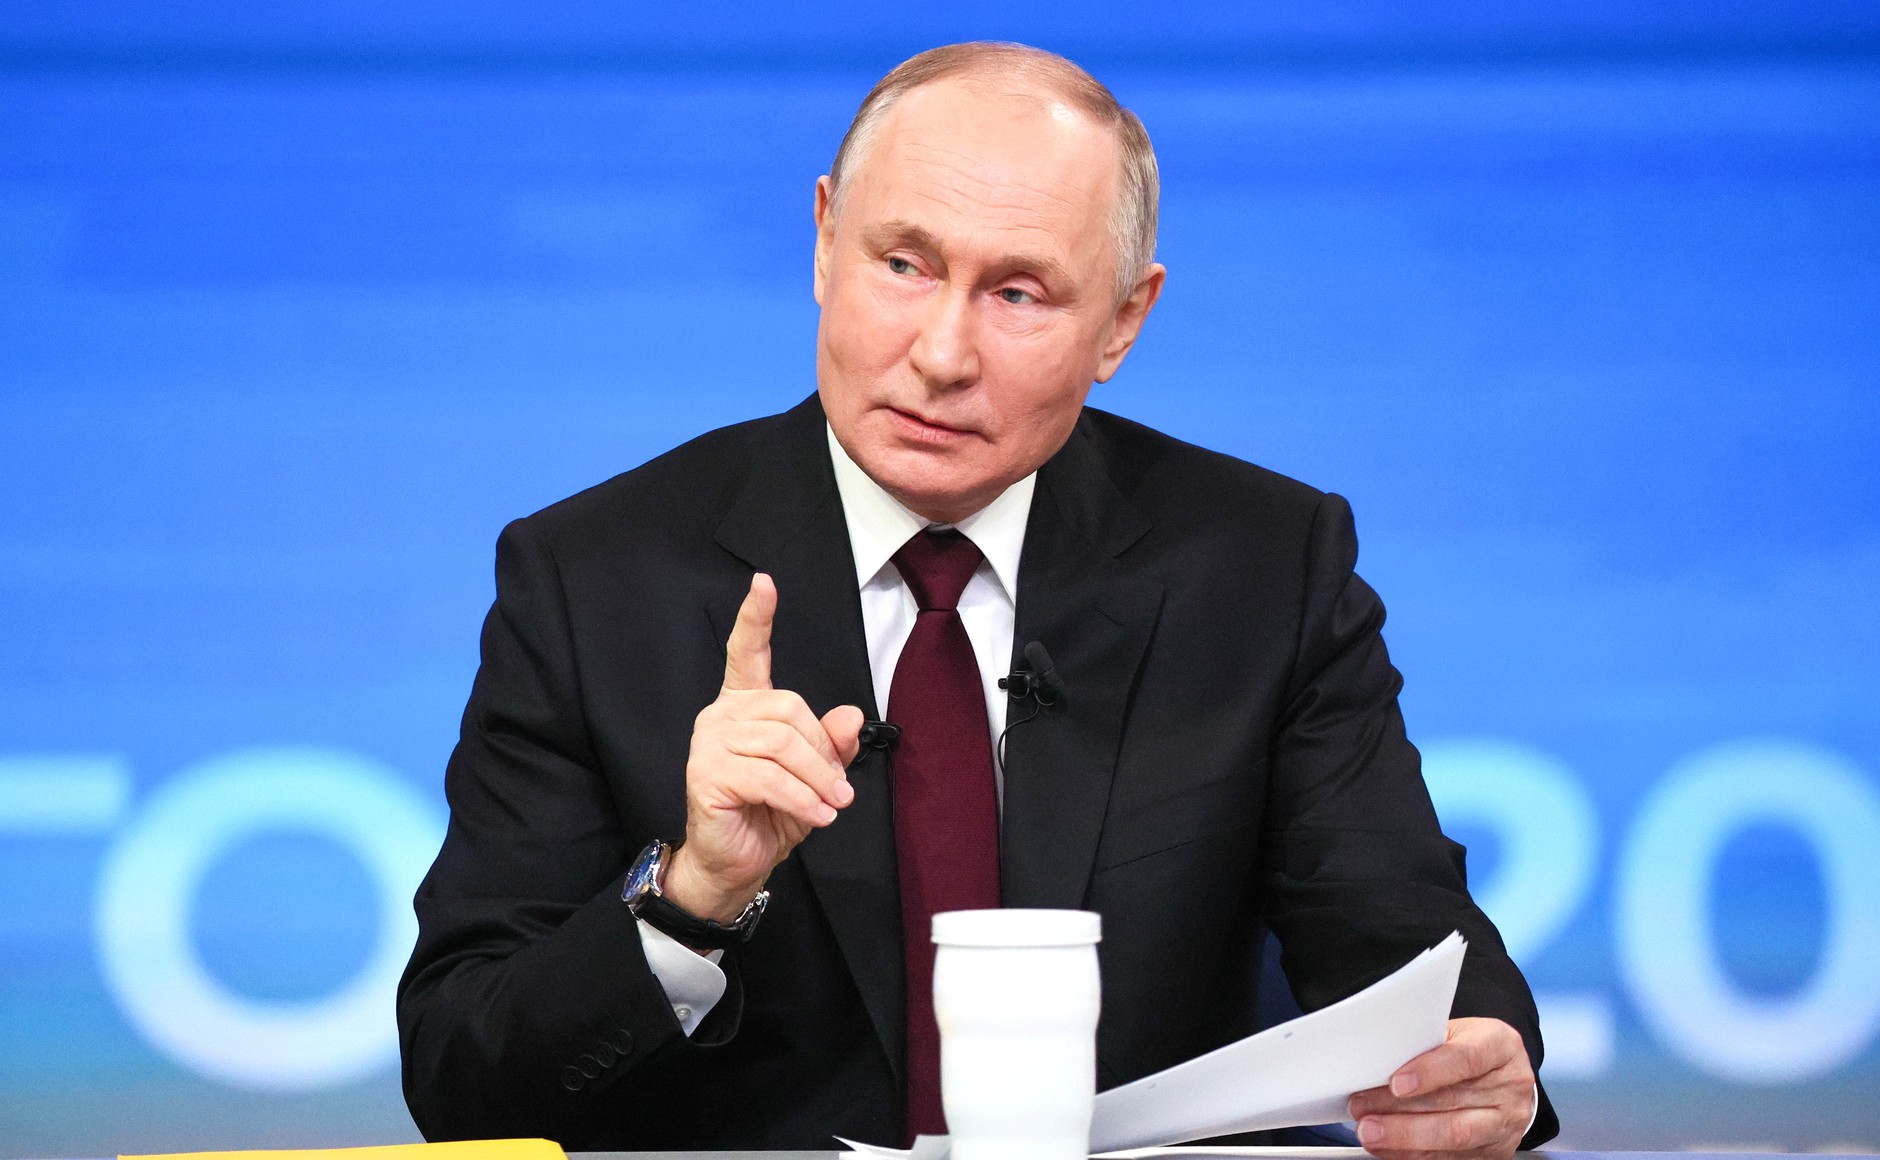 Πούτιν: Με 87,97% ξανά πρόεδρος στις εκλογές - Πρώτη φορά ψήφισαν οι 4 ουκρανικές που προσάρτησε η Ρωσία